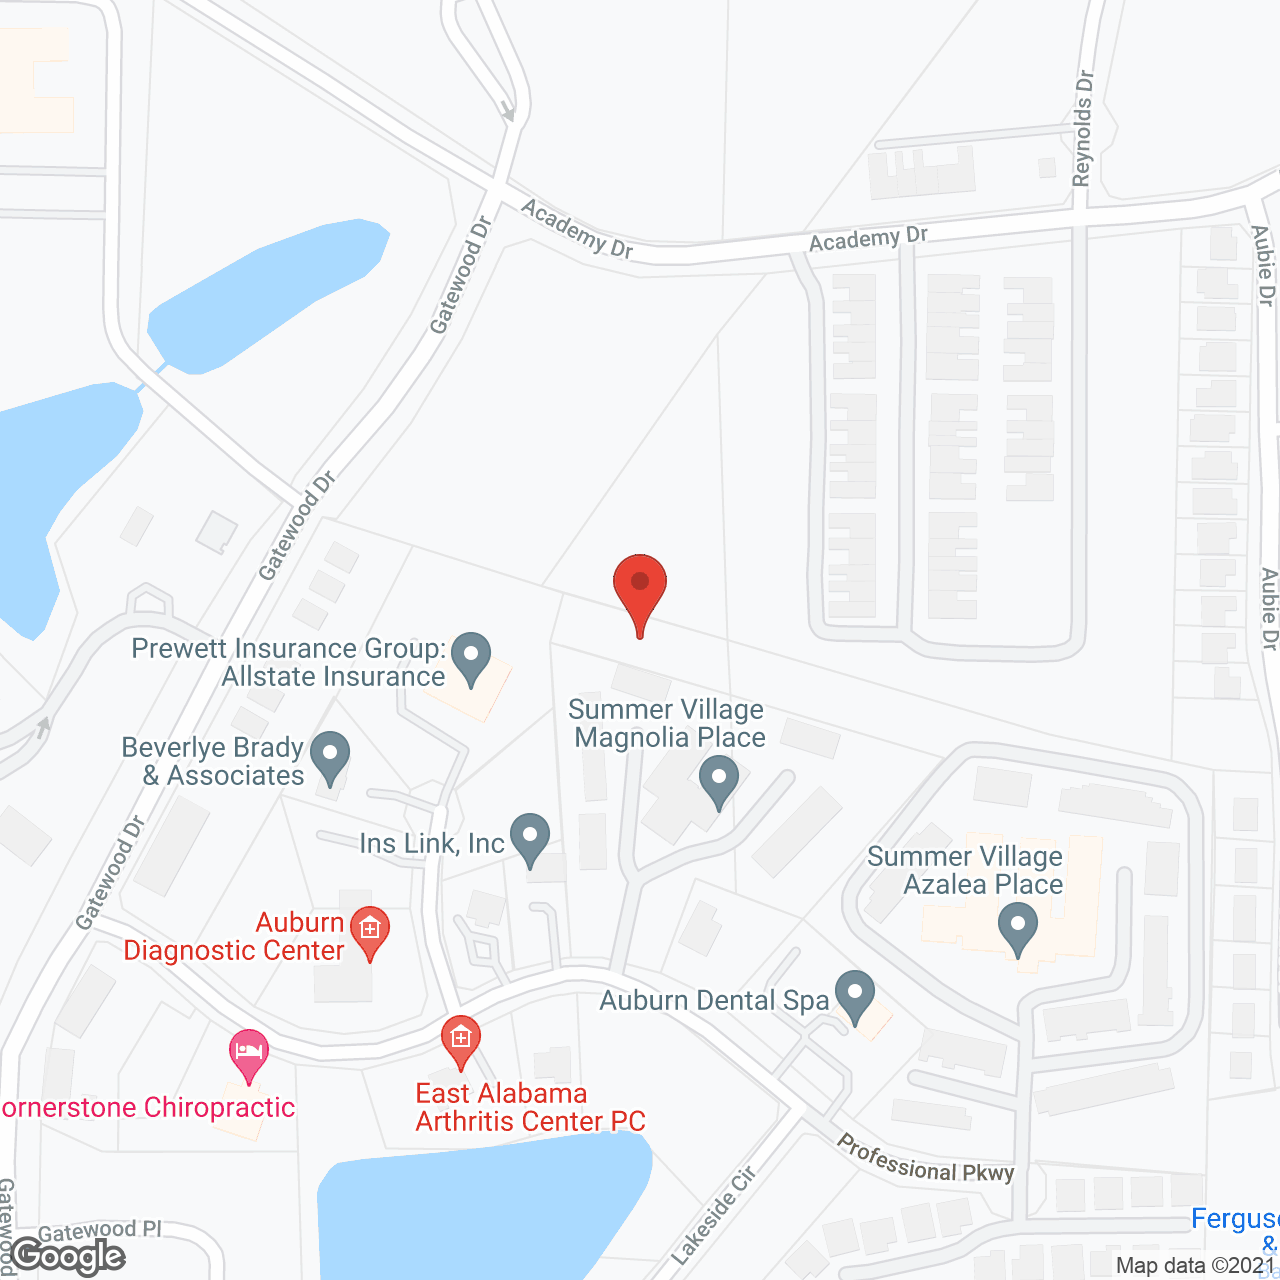 Summer Village Campus in google map